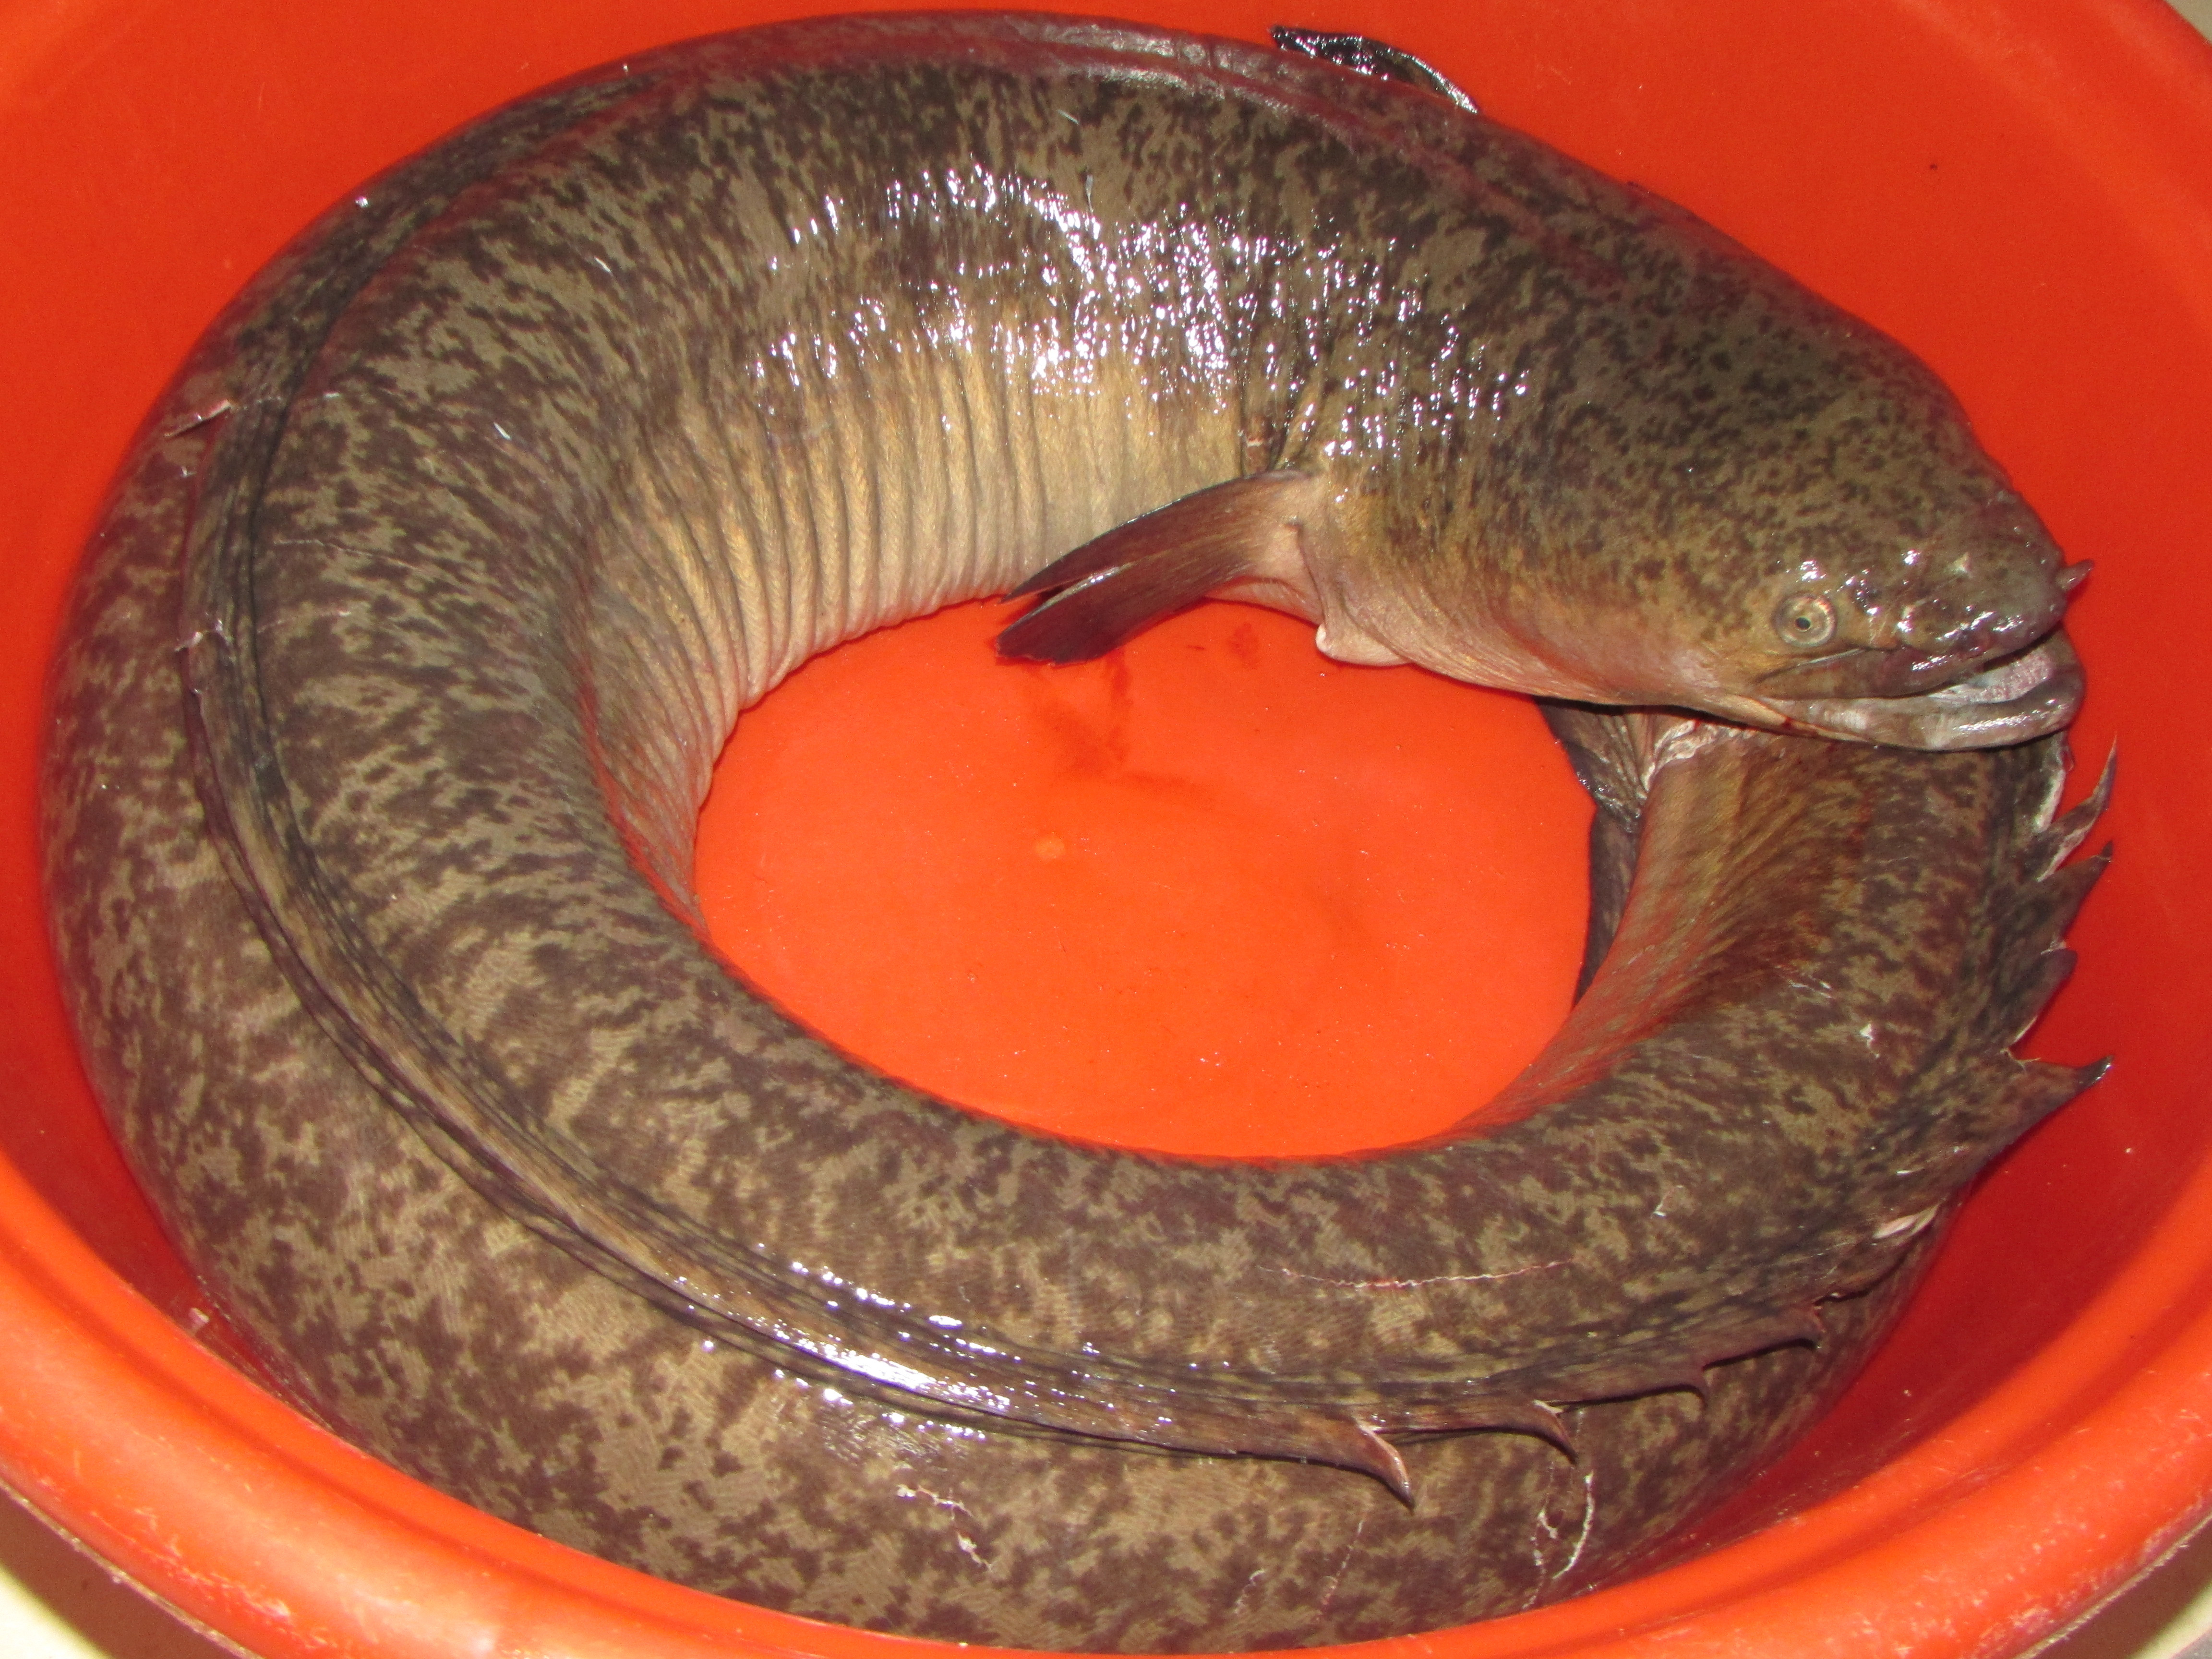 Cá lệch là một trong những loài cá đặc sản ở miền Tây xứ Nghệ; hiện có giá từ 800.000 - 1.000.000 đồng/kg, tùy theo trọng lượng cá. Ảnh Bá Hậu